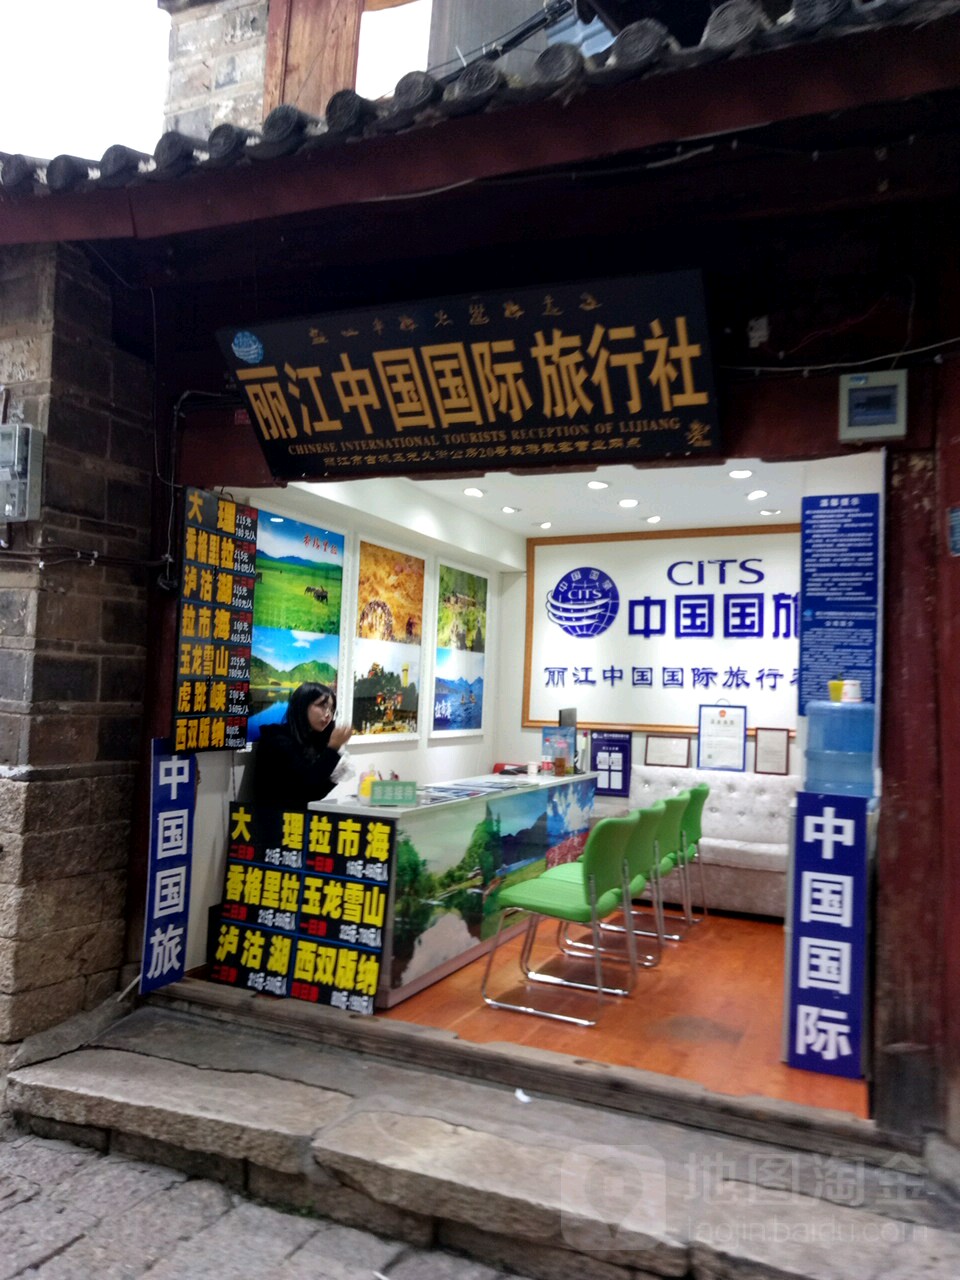 麗江中旅國際旅行社旅游散客營業網點